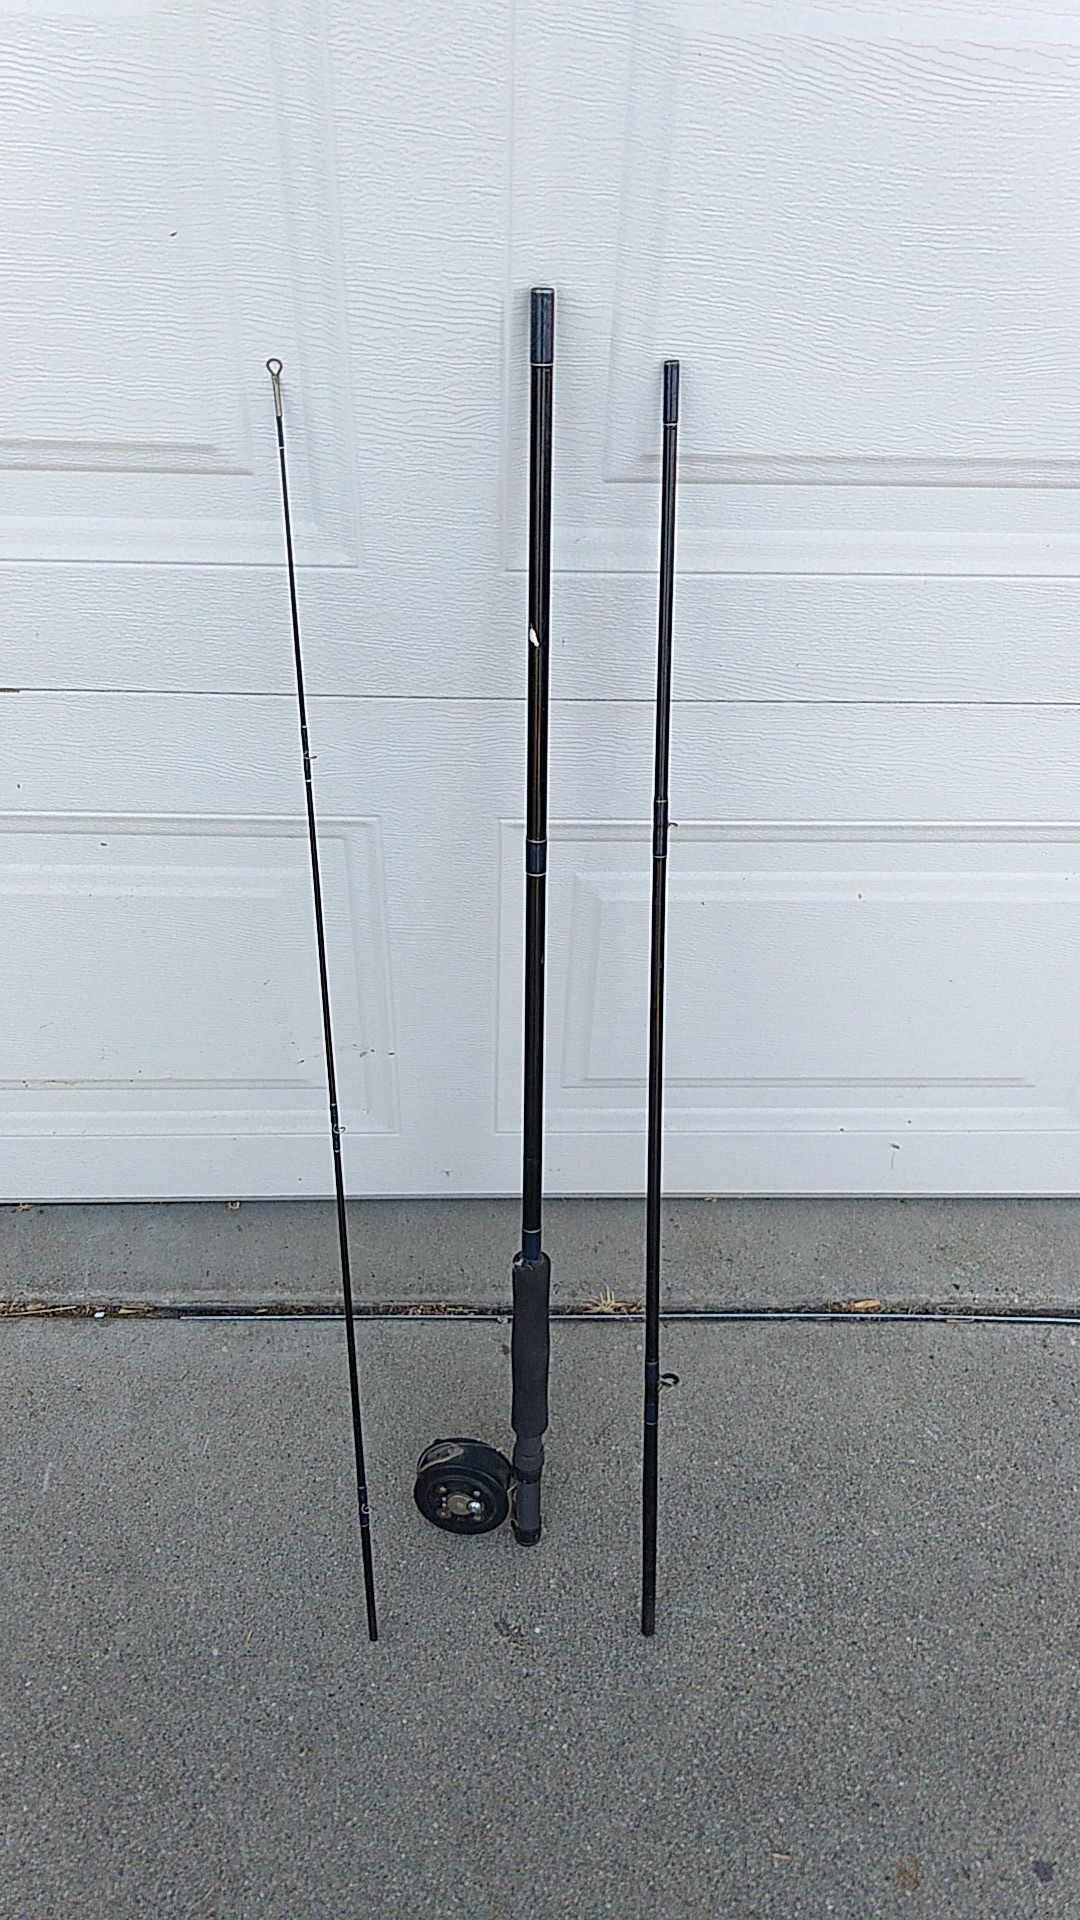 Three-piece Martin fly fishing rod and reel $25 Fontana